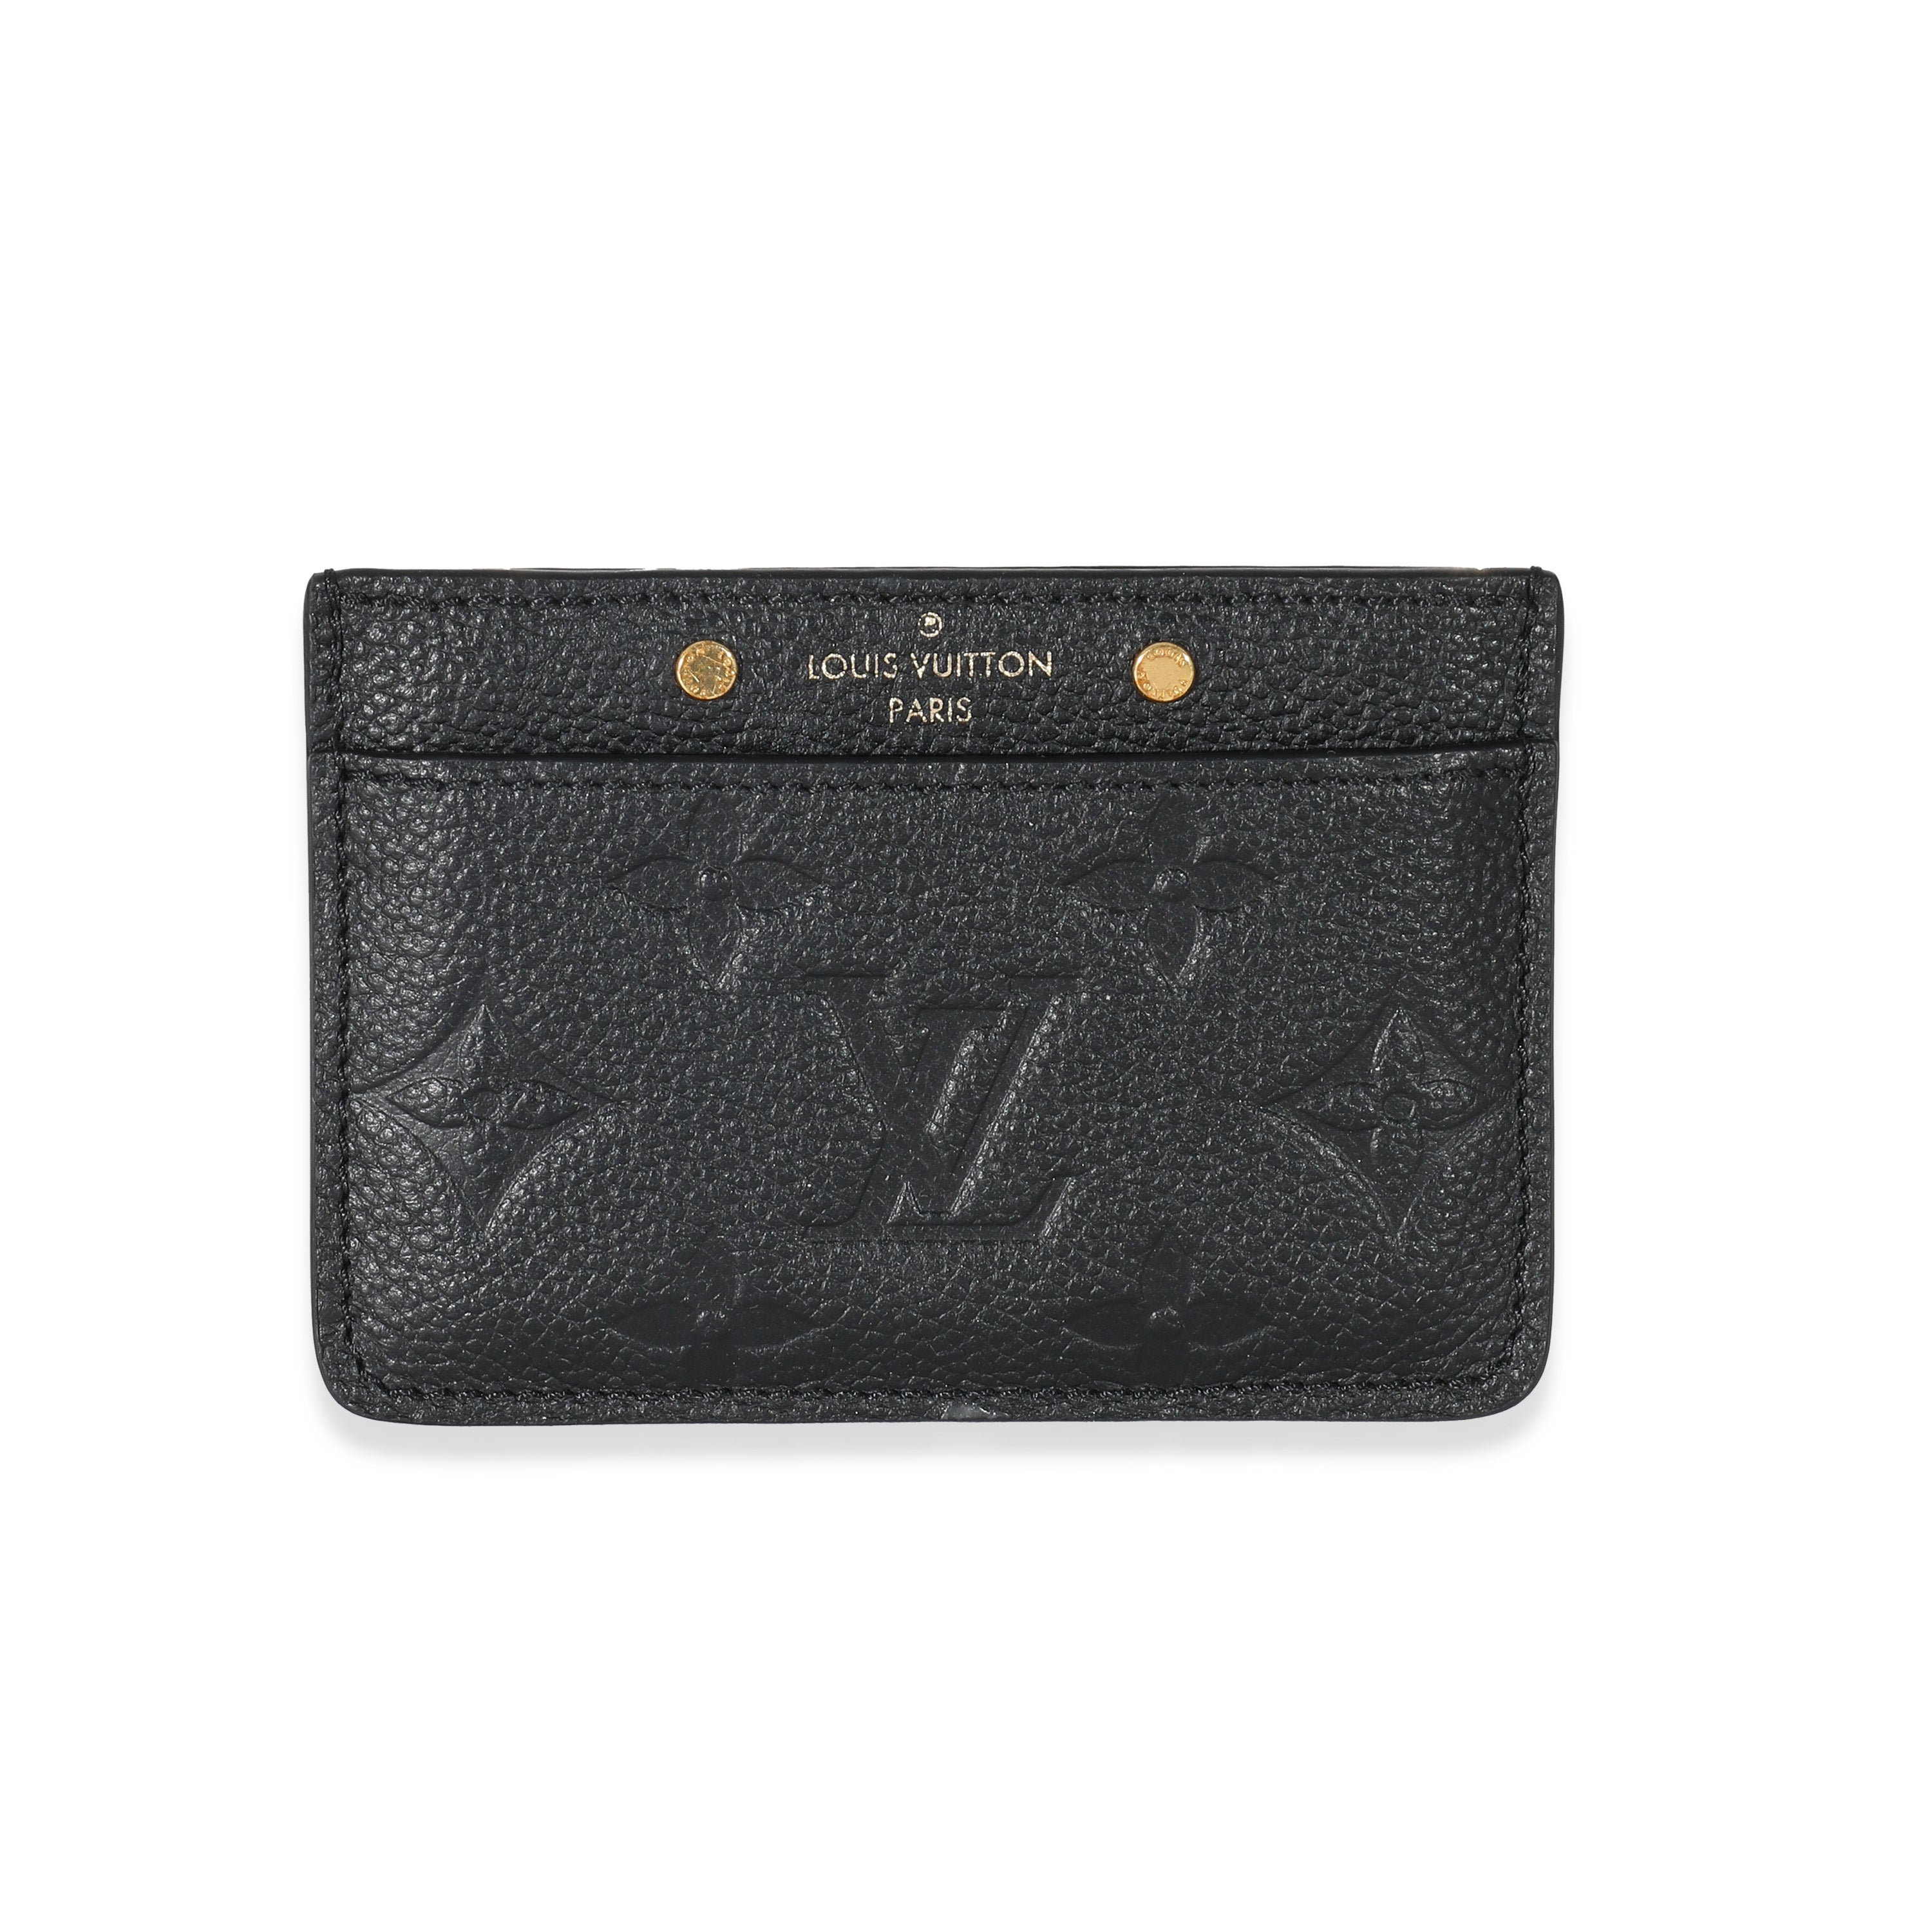 Louis Vuitton Black Empreinte Card Holder, myGemma, NZ